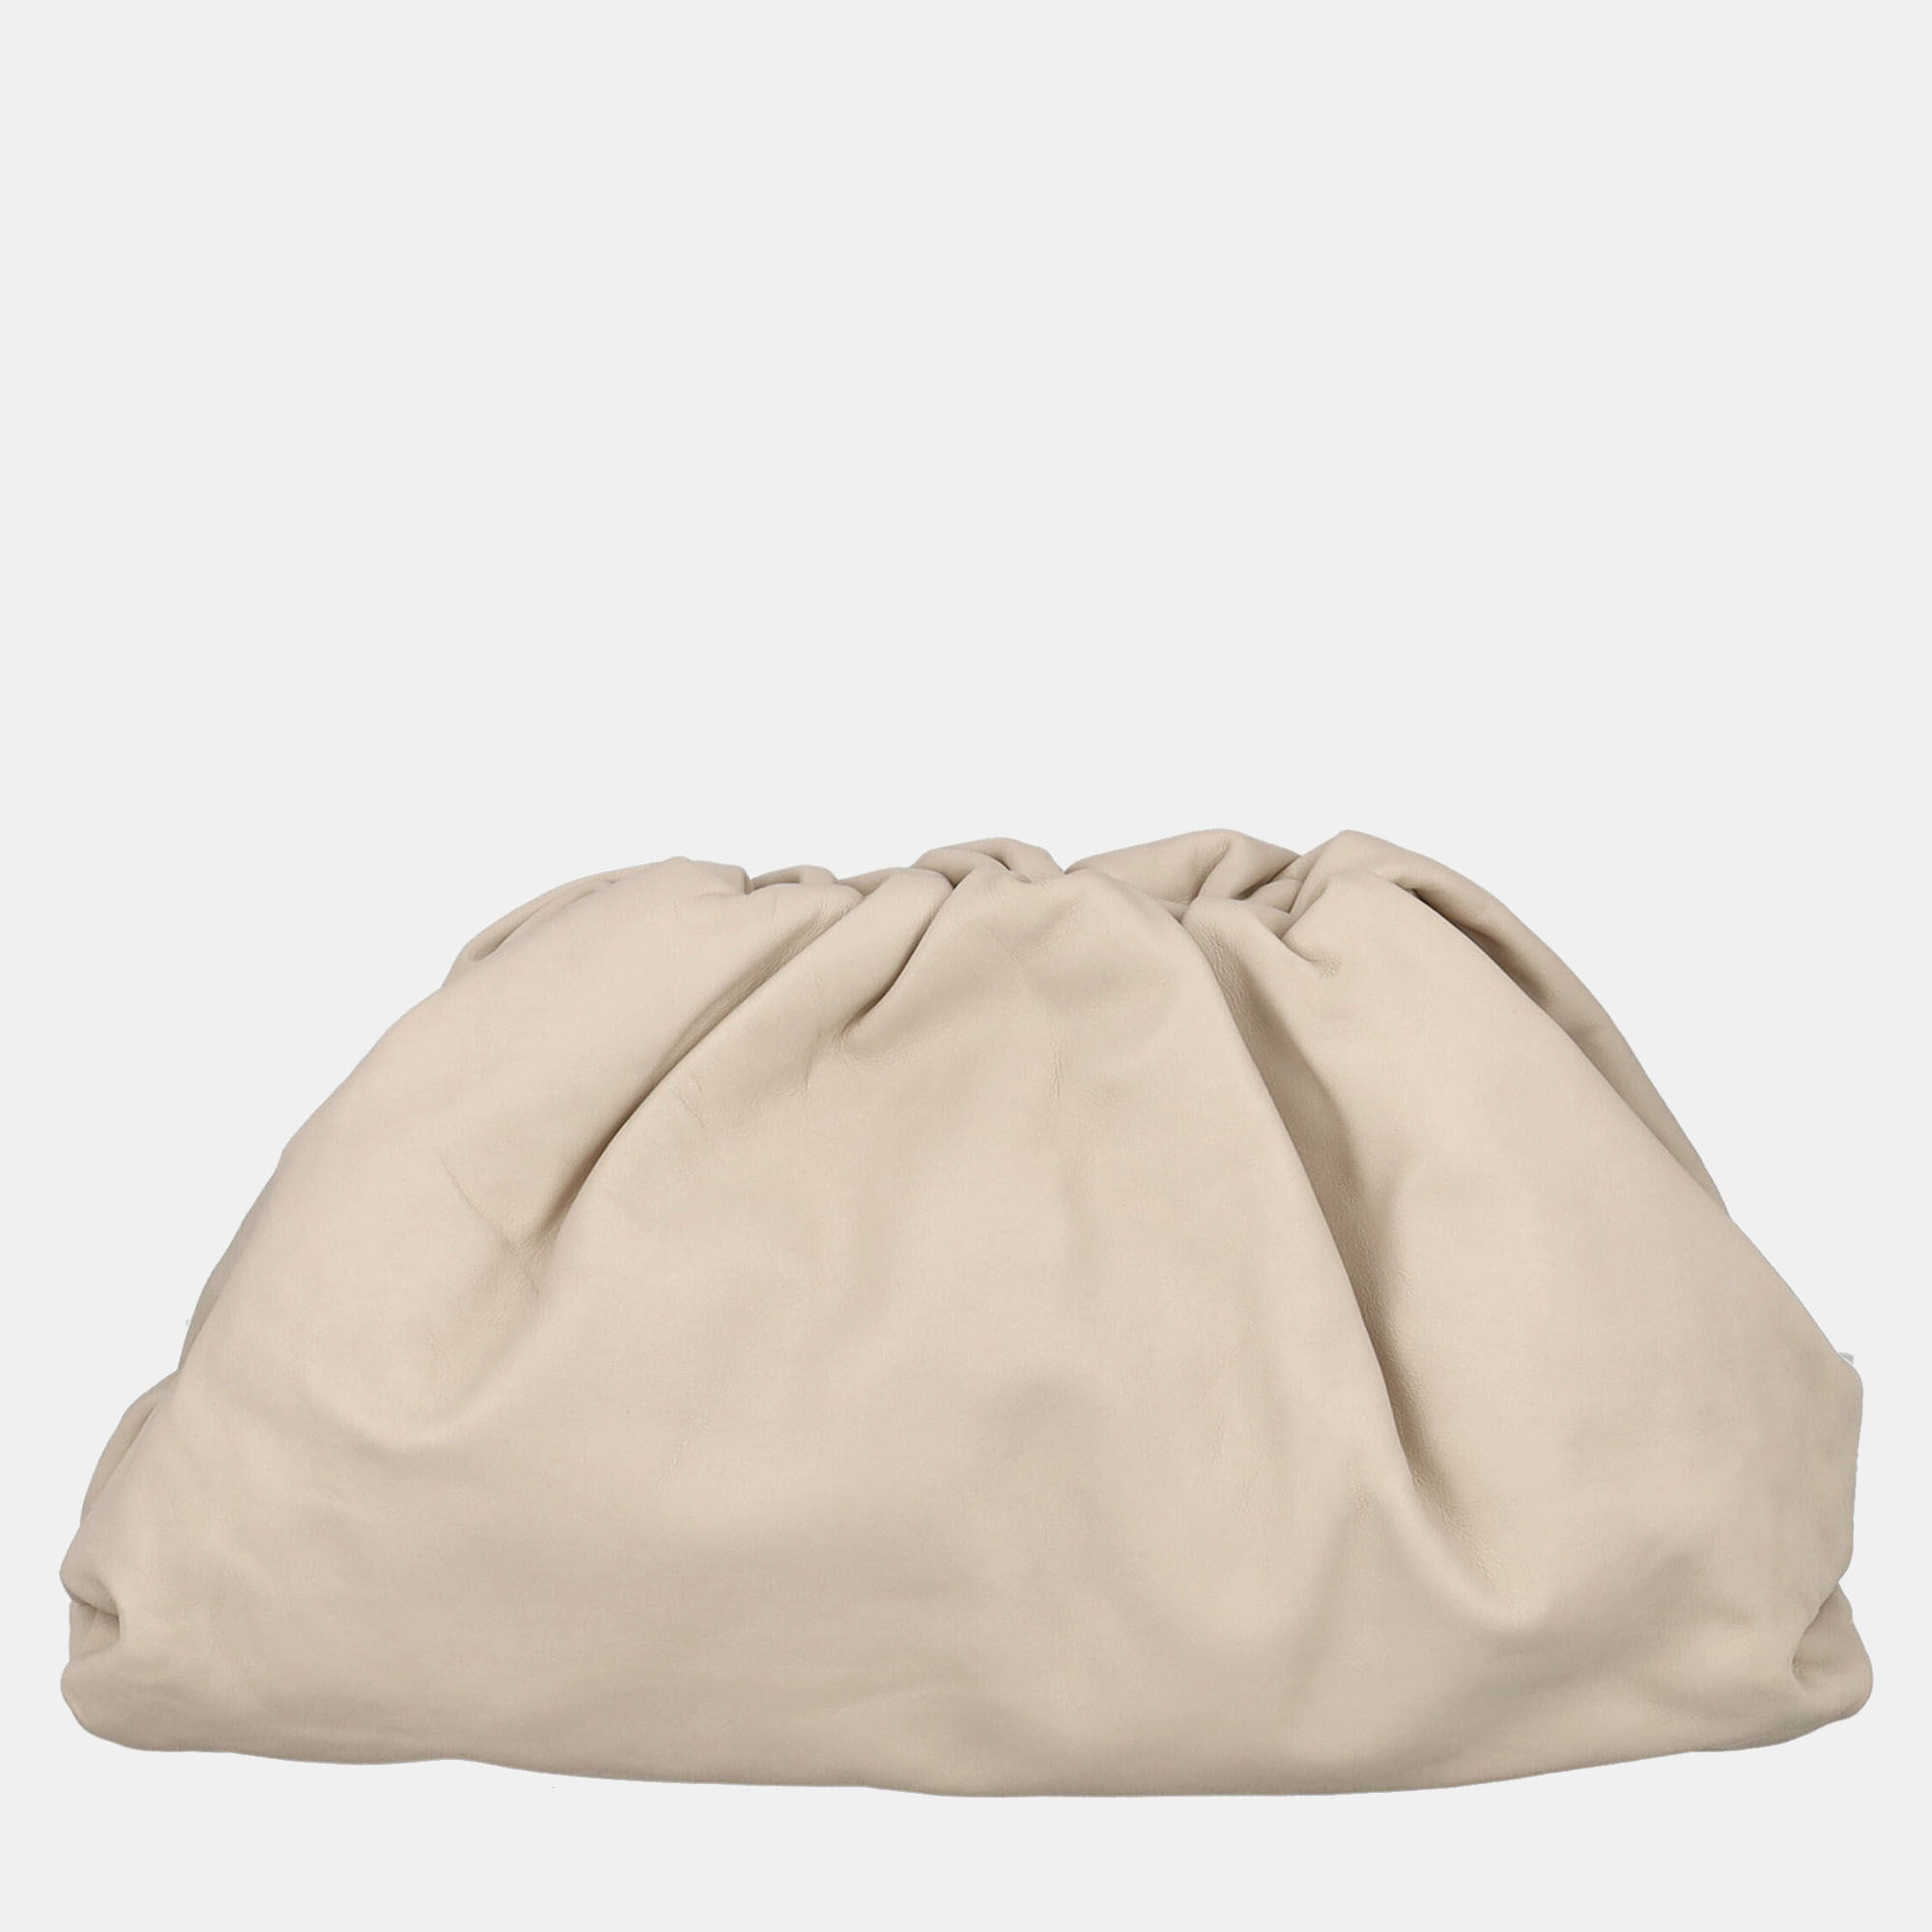 Bottega Veneta  Women's Leather Clutch Bag - Beige - One Size